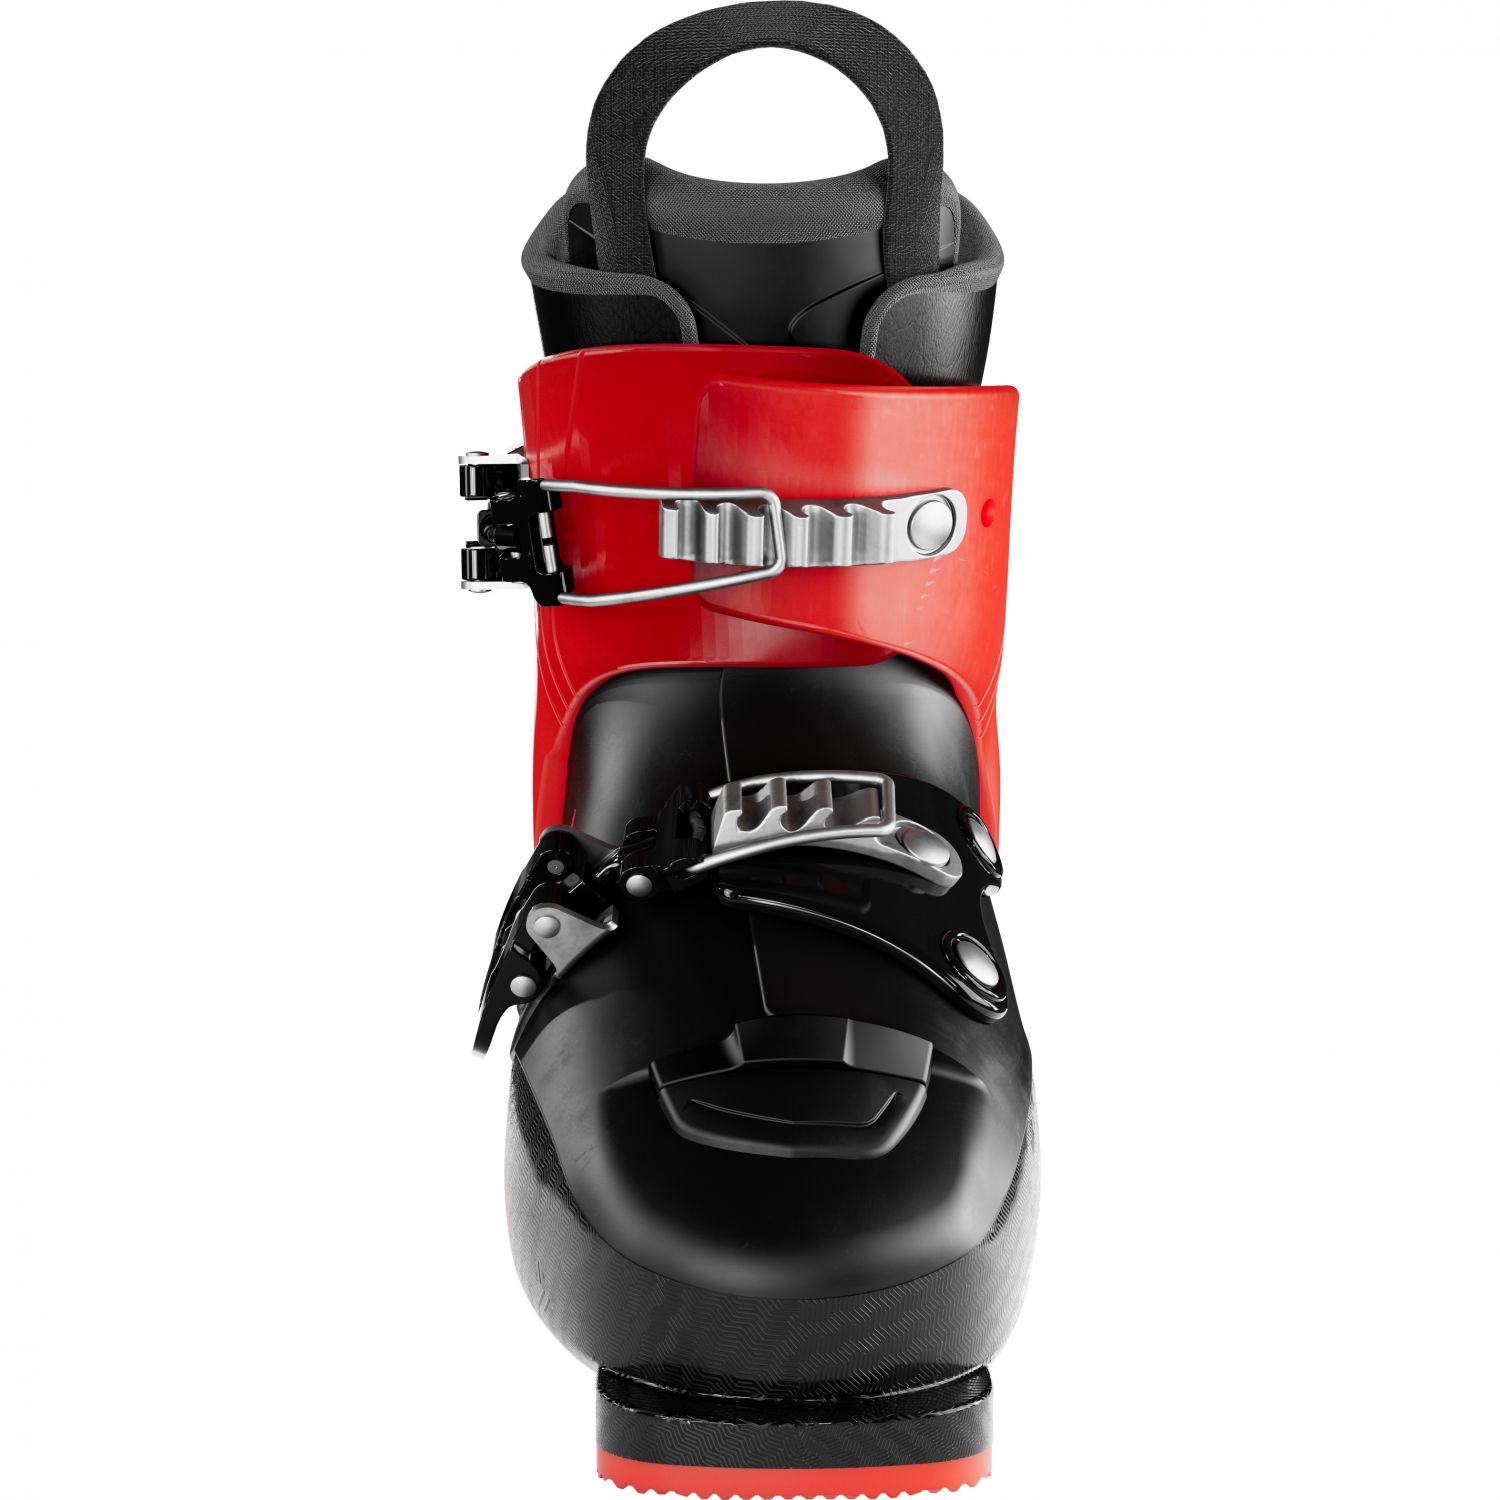 Atomic Hawx Kids 2, ski boots, junior, black/red